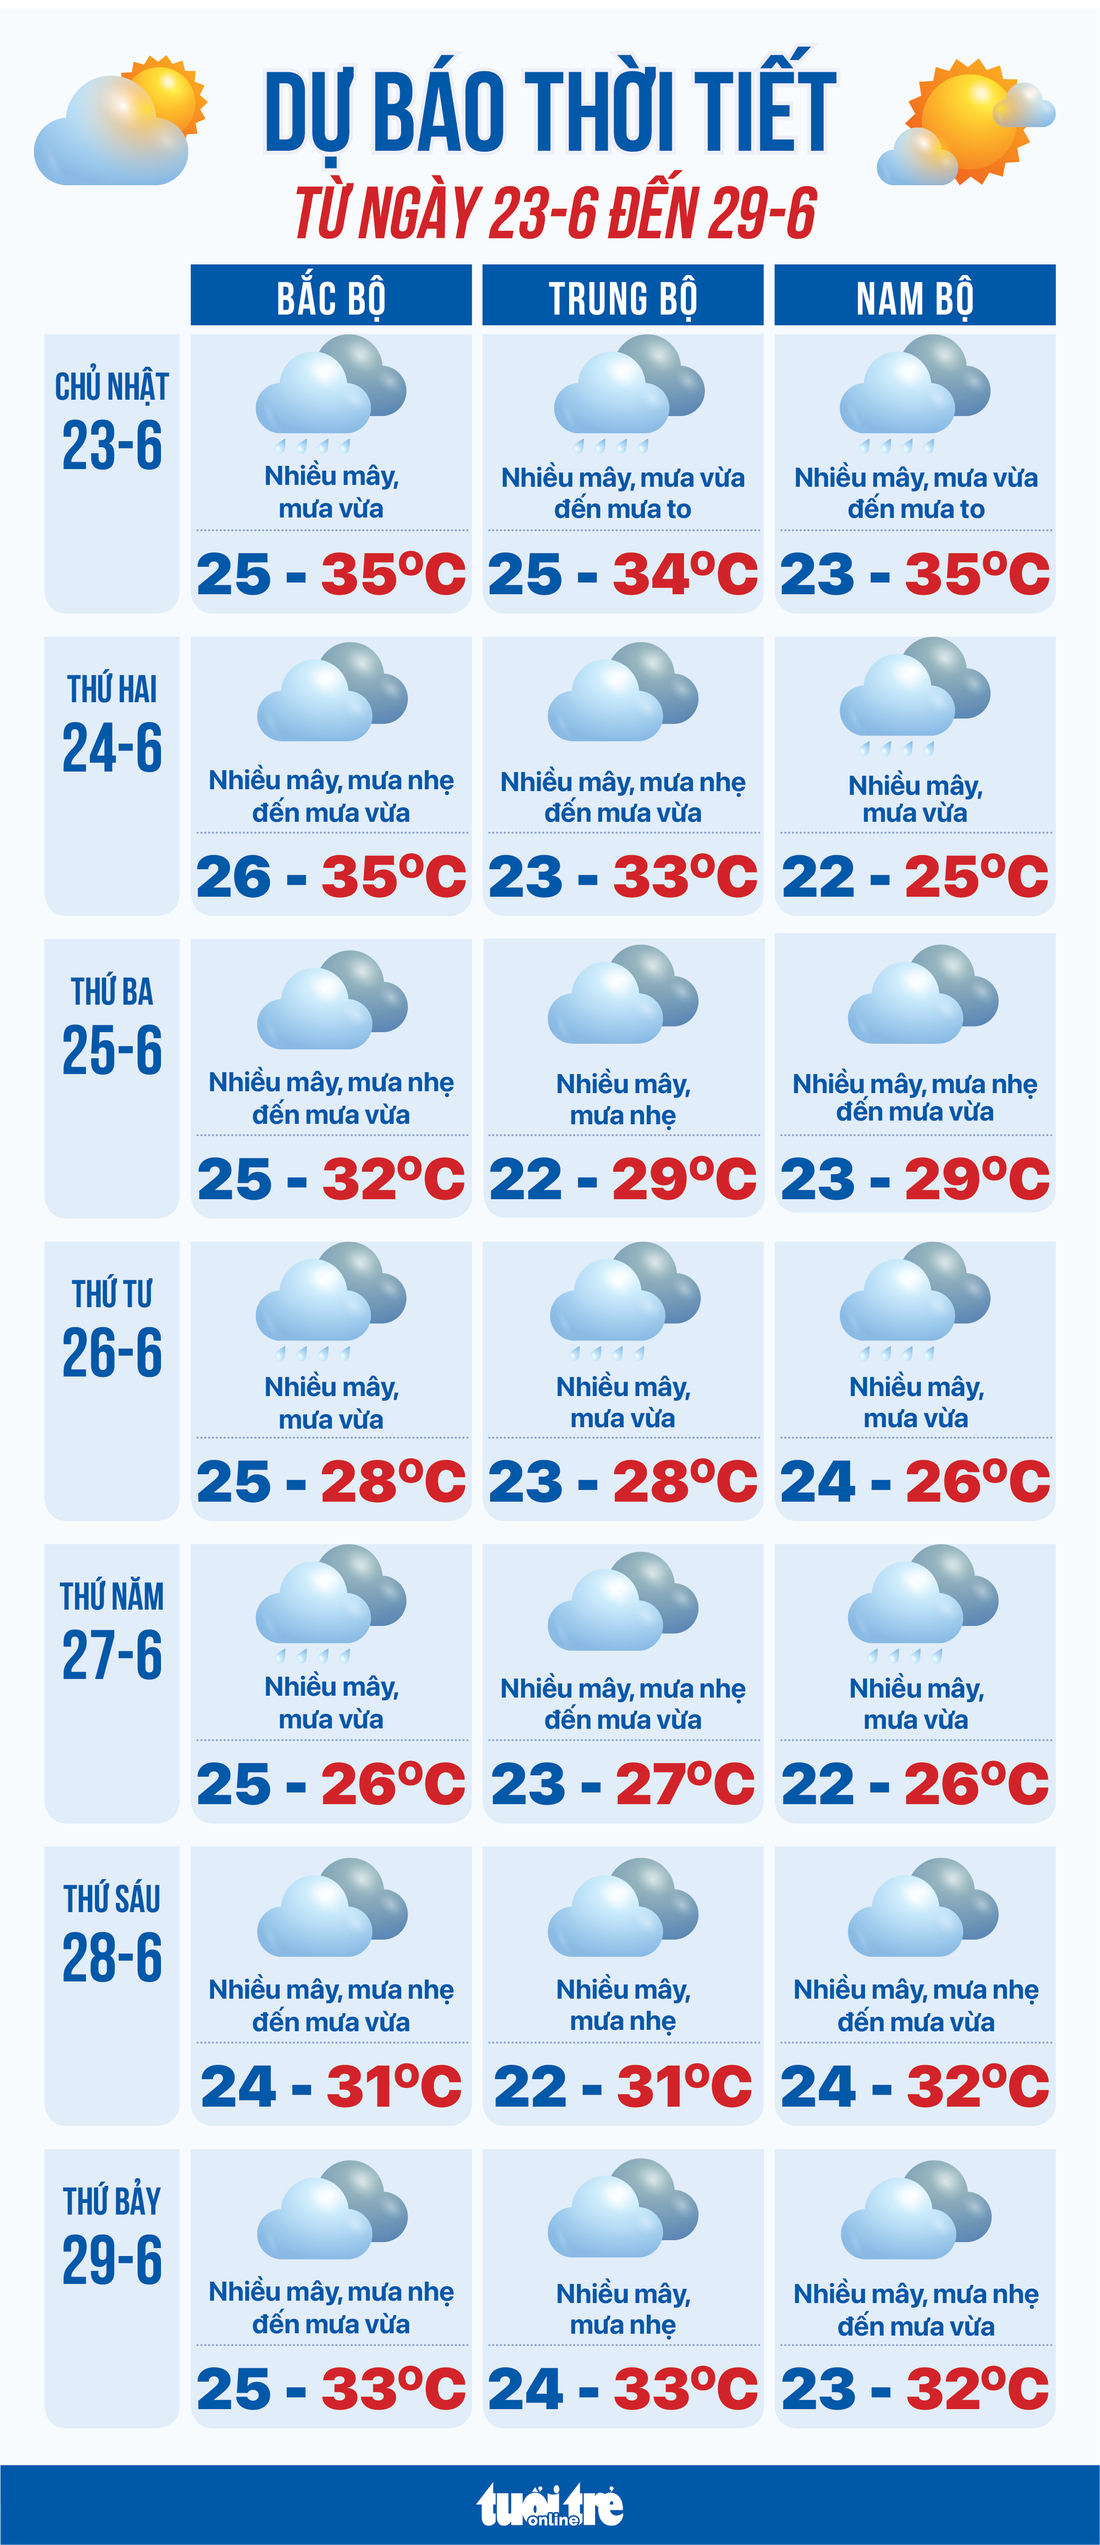 Dự báo thời tiết tuần từ 23 đến 29-6 - Đồ họa: NGỌC THÀNH